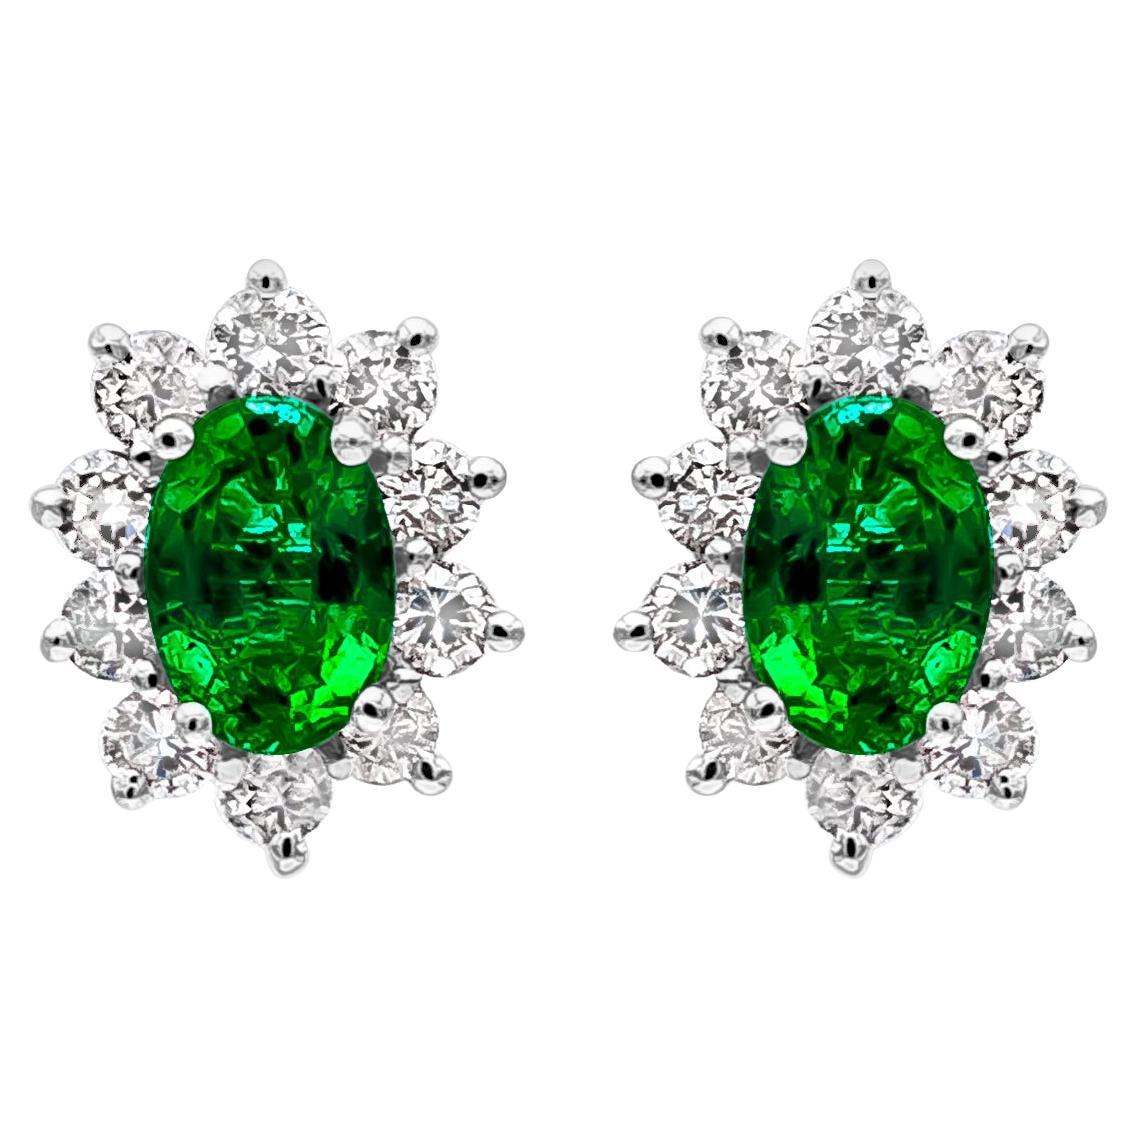 1.37 Karat grüner Smaragd und Diamant-Halo-Ohrstecker von Roman Malakov